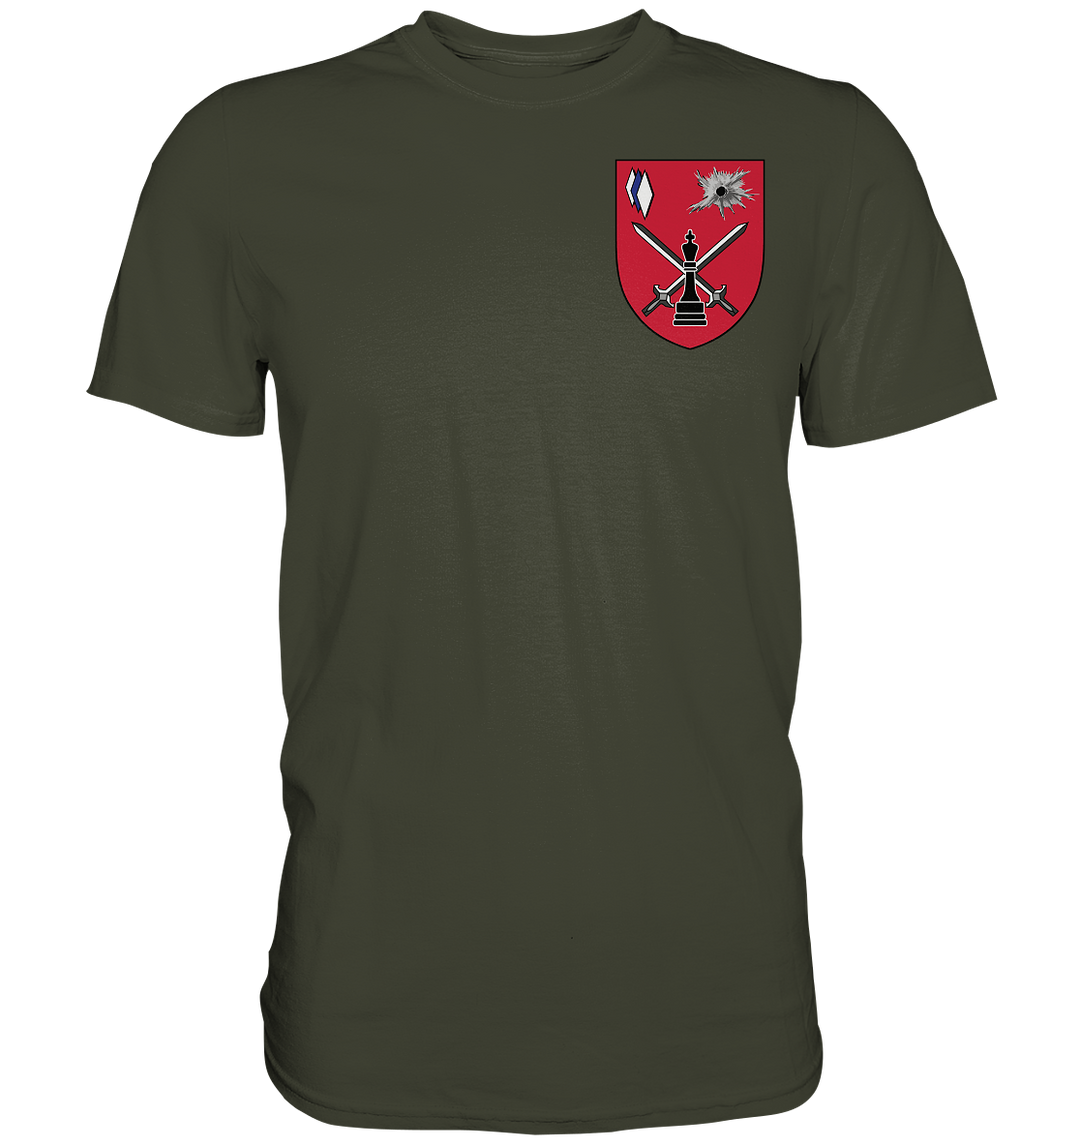 "Gefechtssimulationszentrum Heer" - Premium Shirt